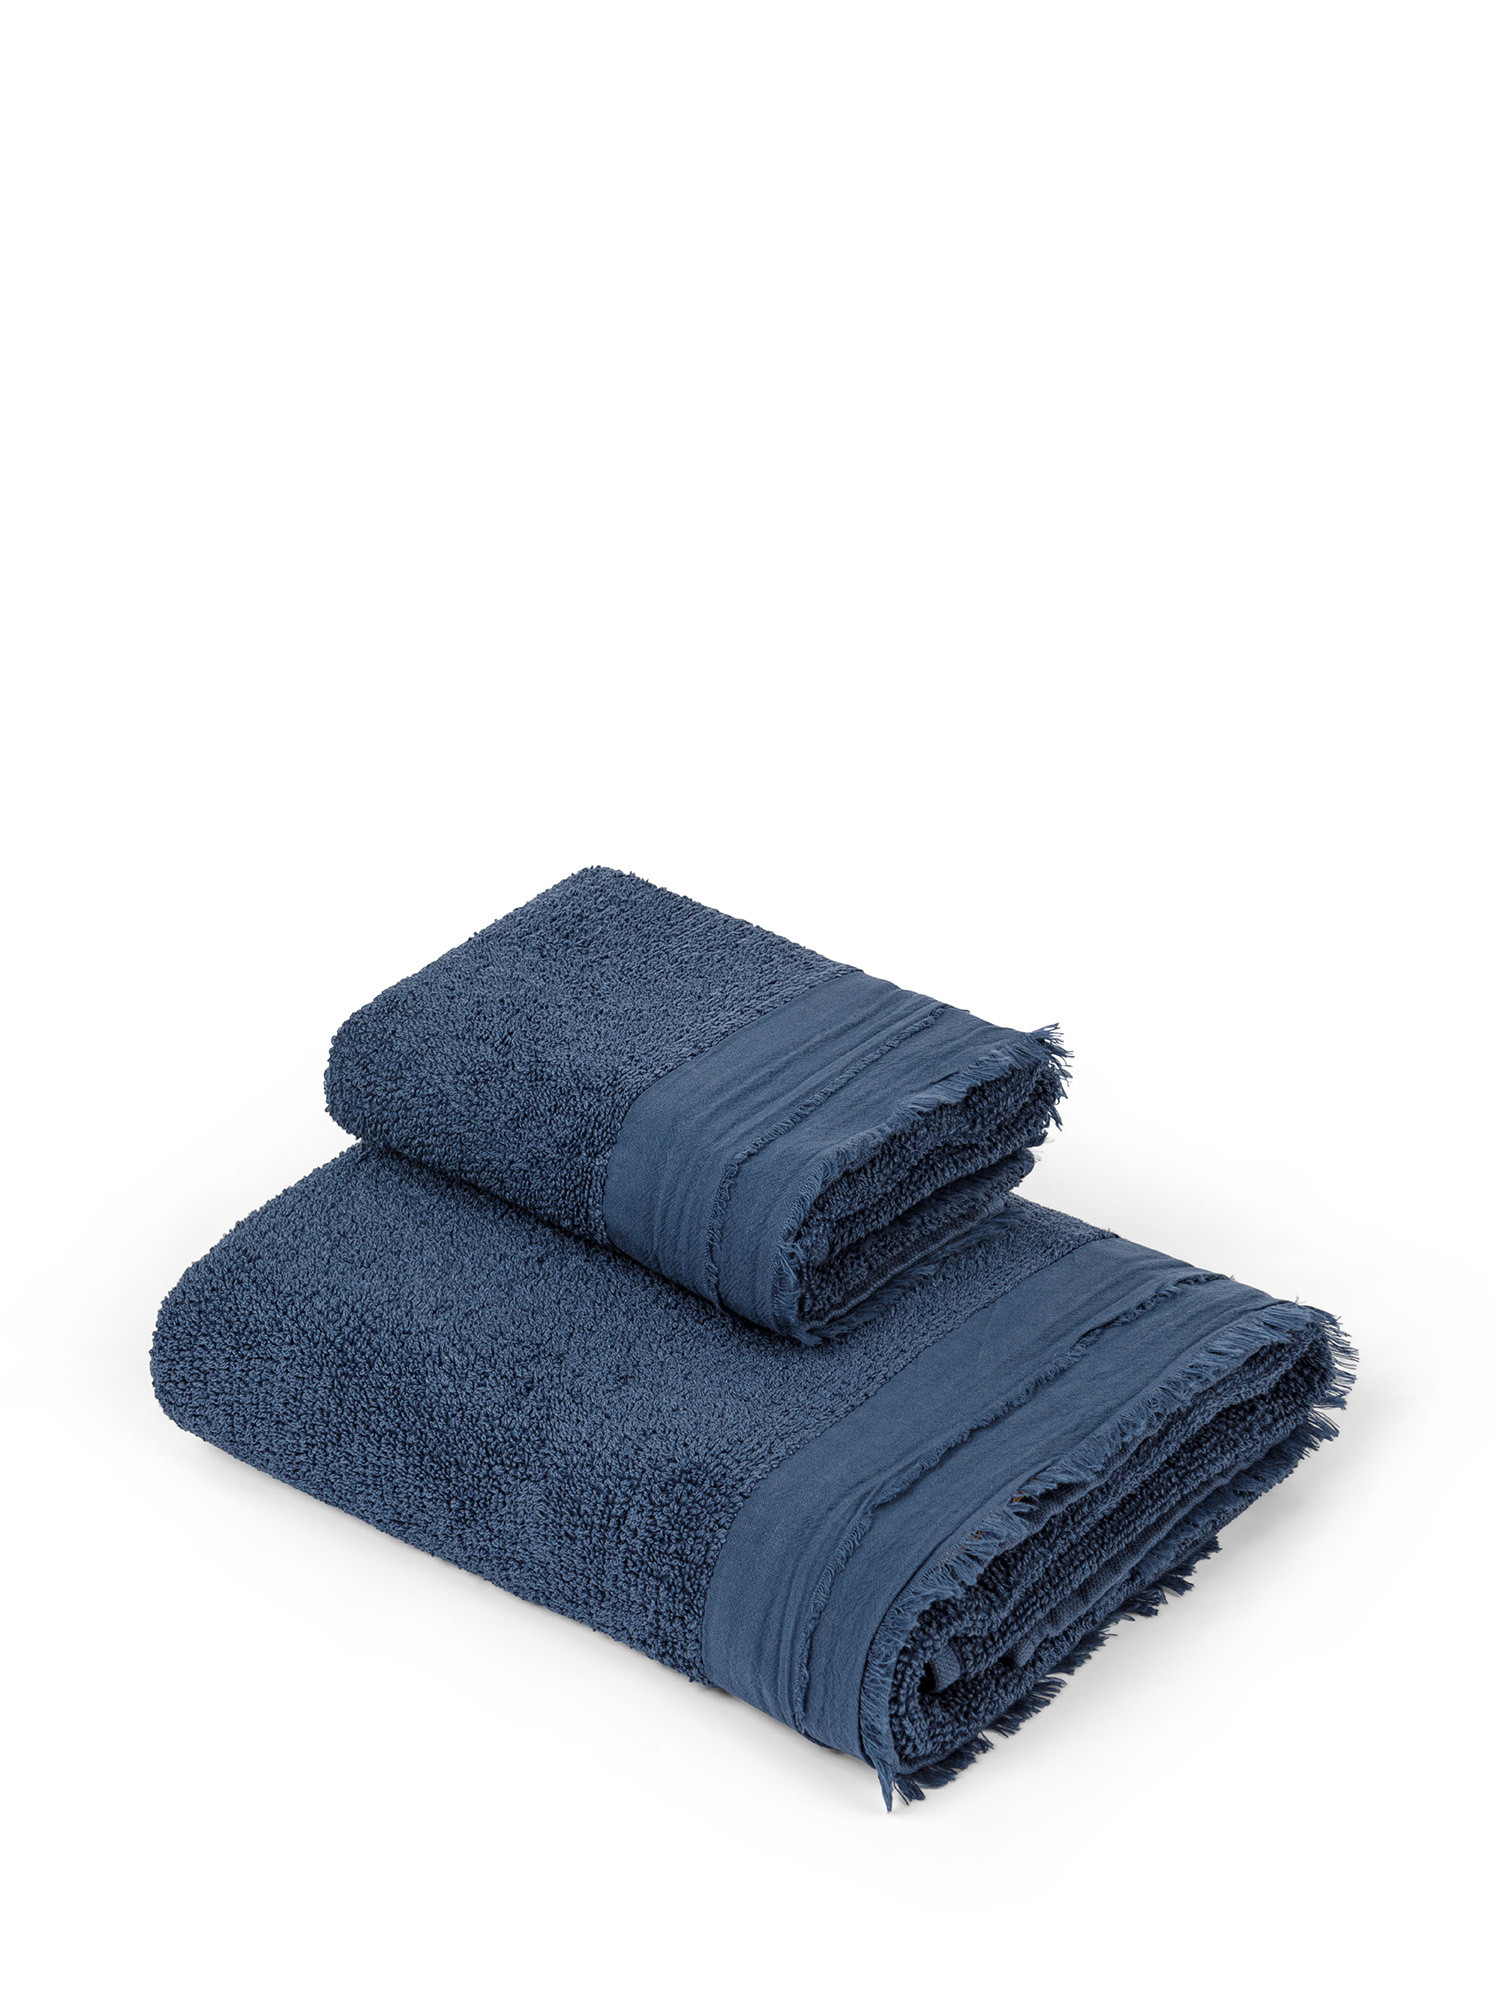 Asciugamano spugna di cotone con volant, Blu, large image number 0